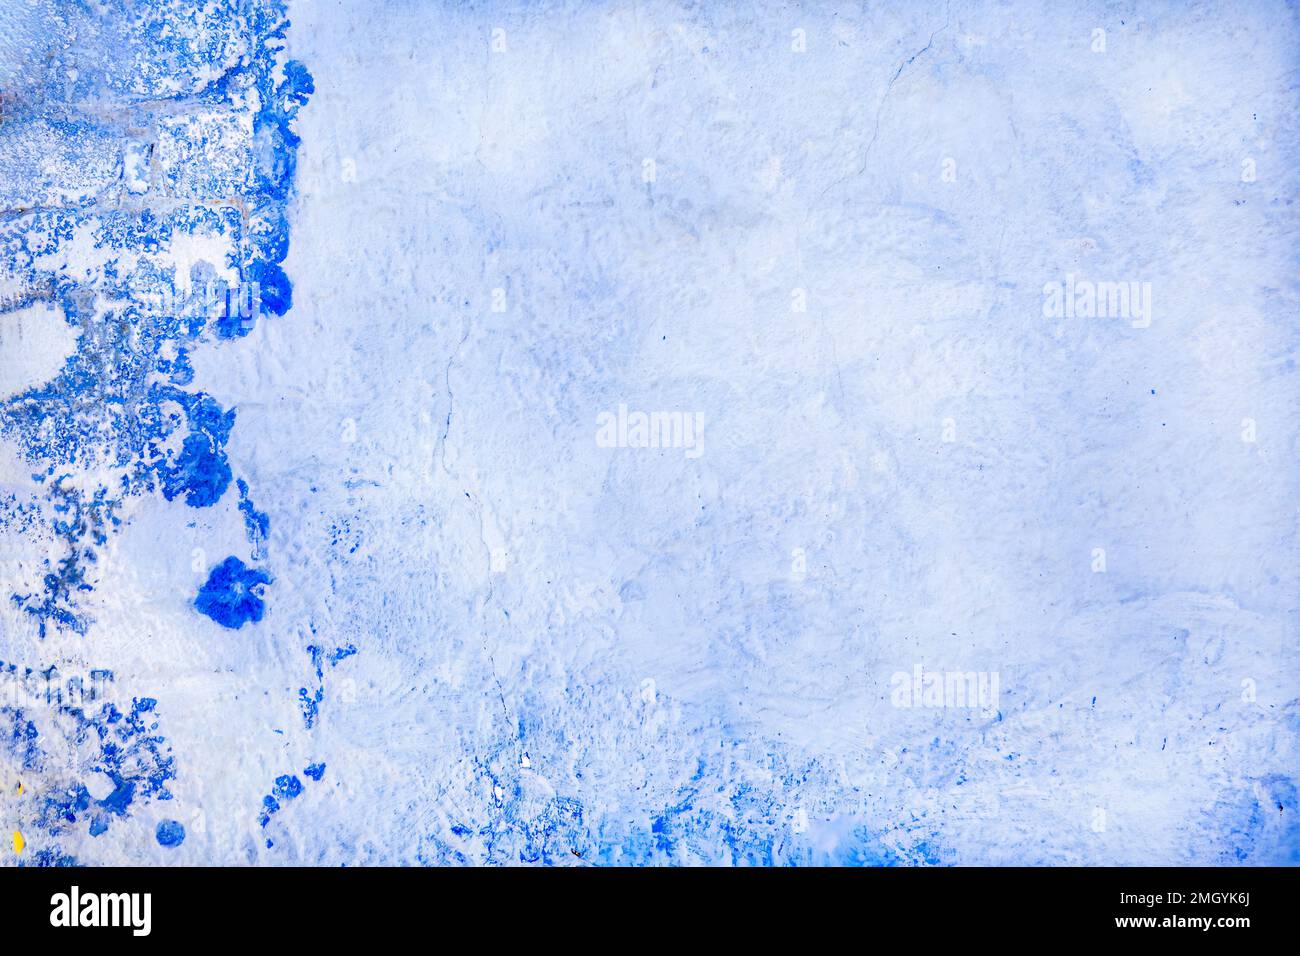 Ein einfaches Hintergrund- oder Tischbild. Das Foto zeigt eine raue gerenderte Wand. Weiß und blau mit mediterranem Flair Stockfoto